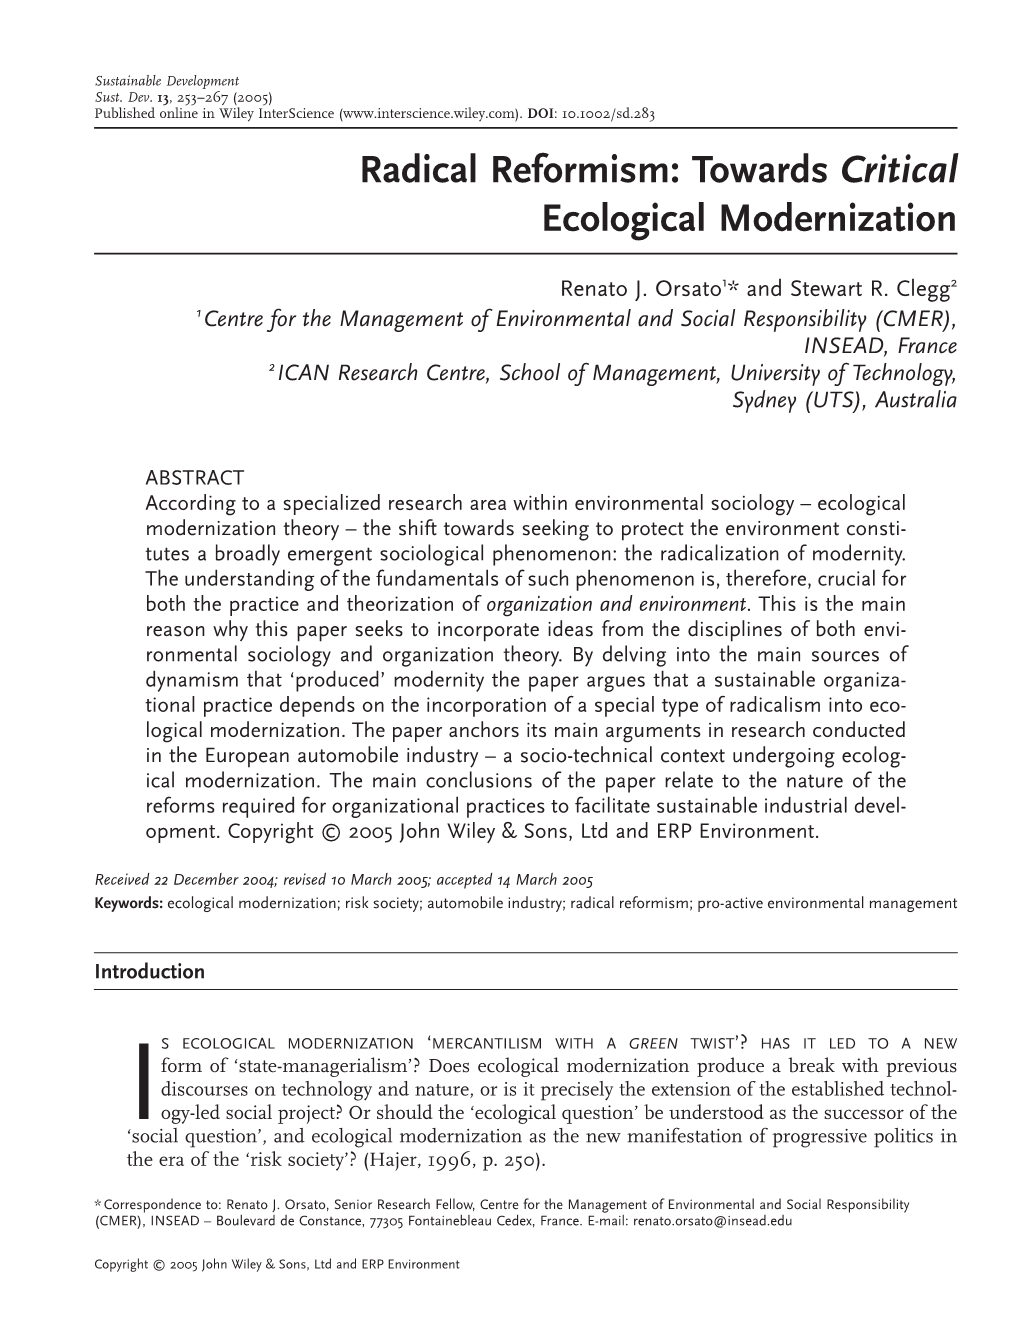 Radical Reformism: Towards Critical Ecological Modernization